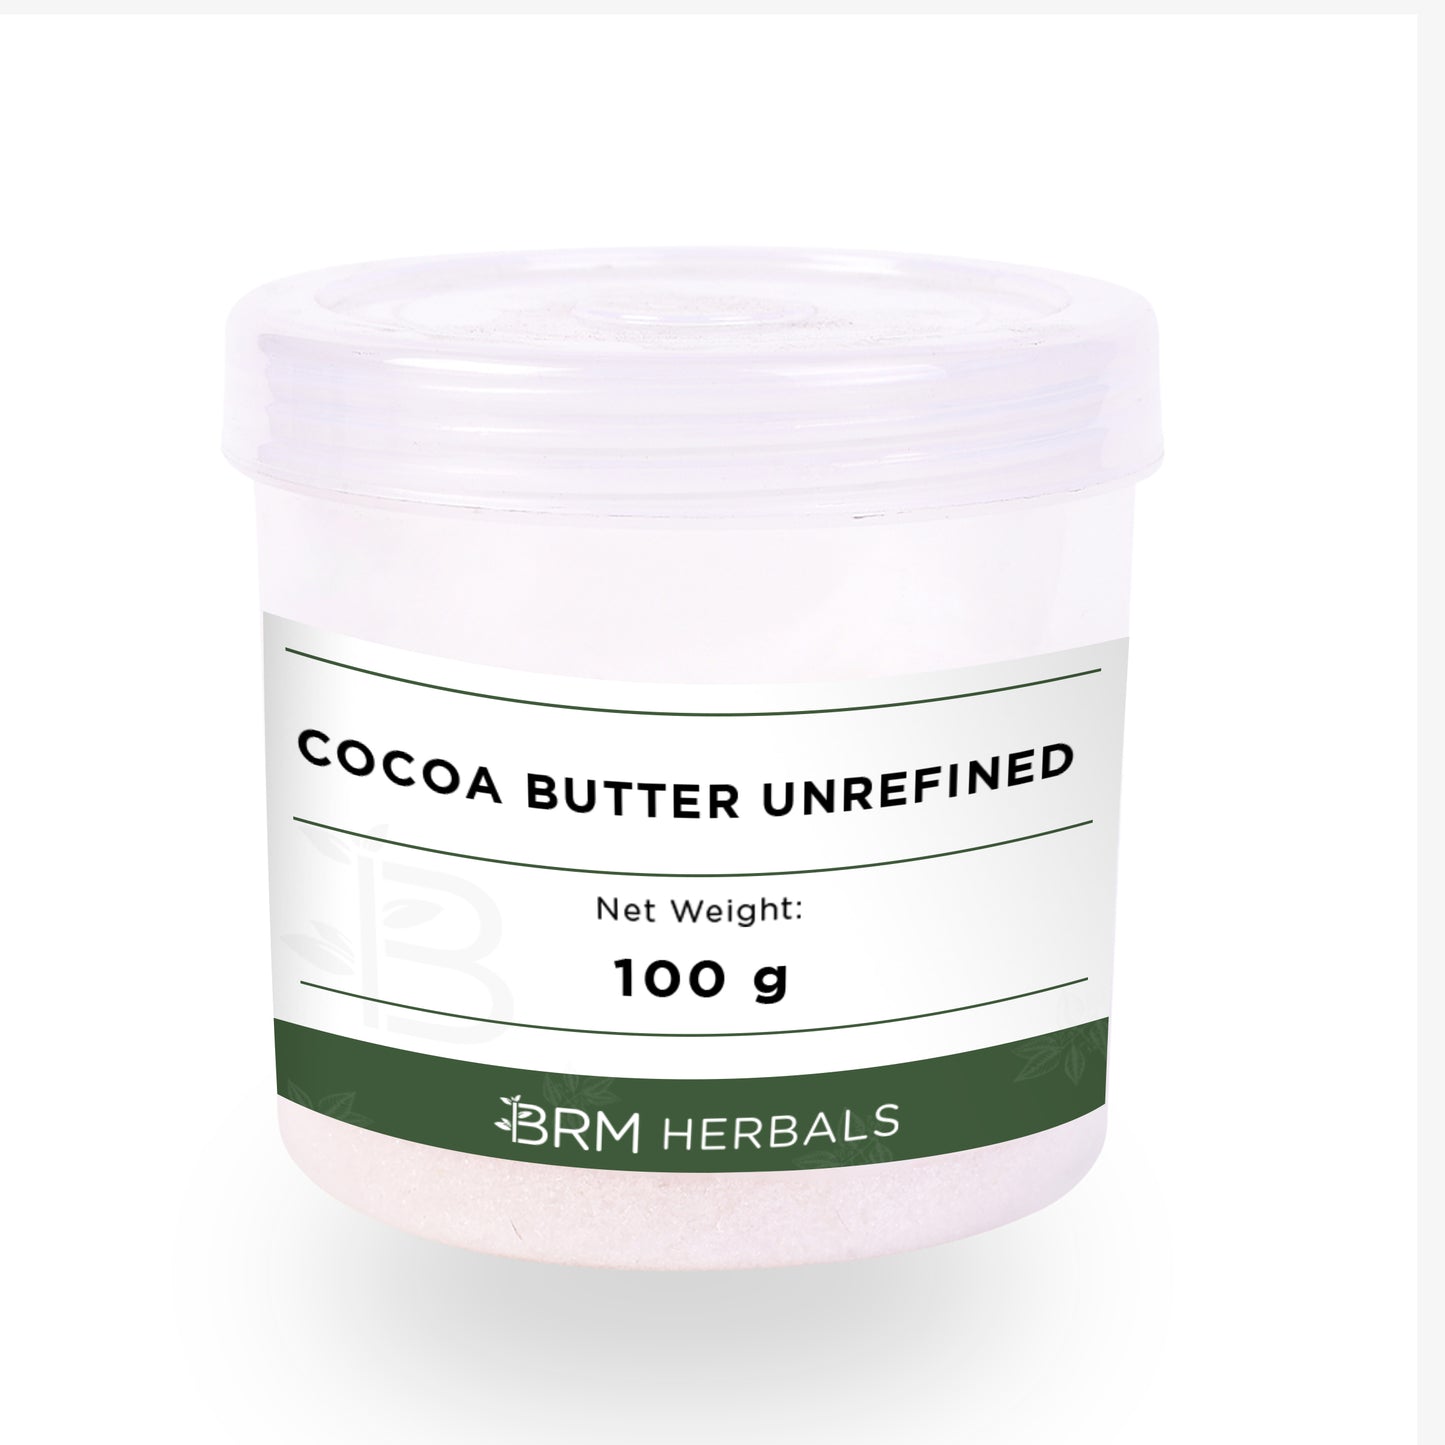 Cocoa Butter Unrefined